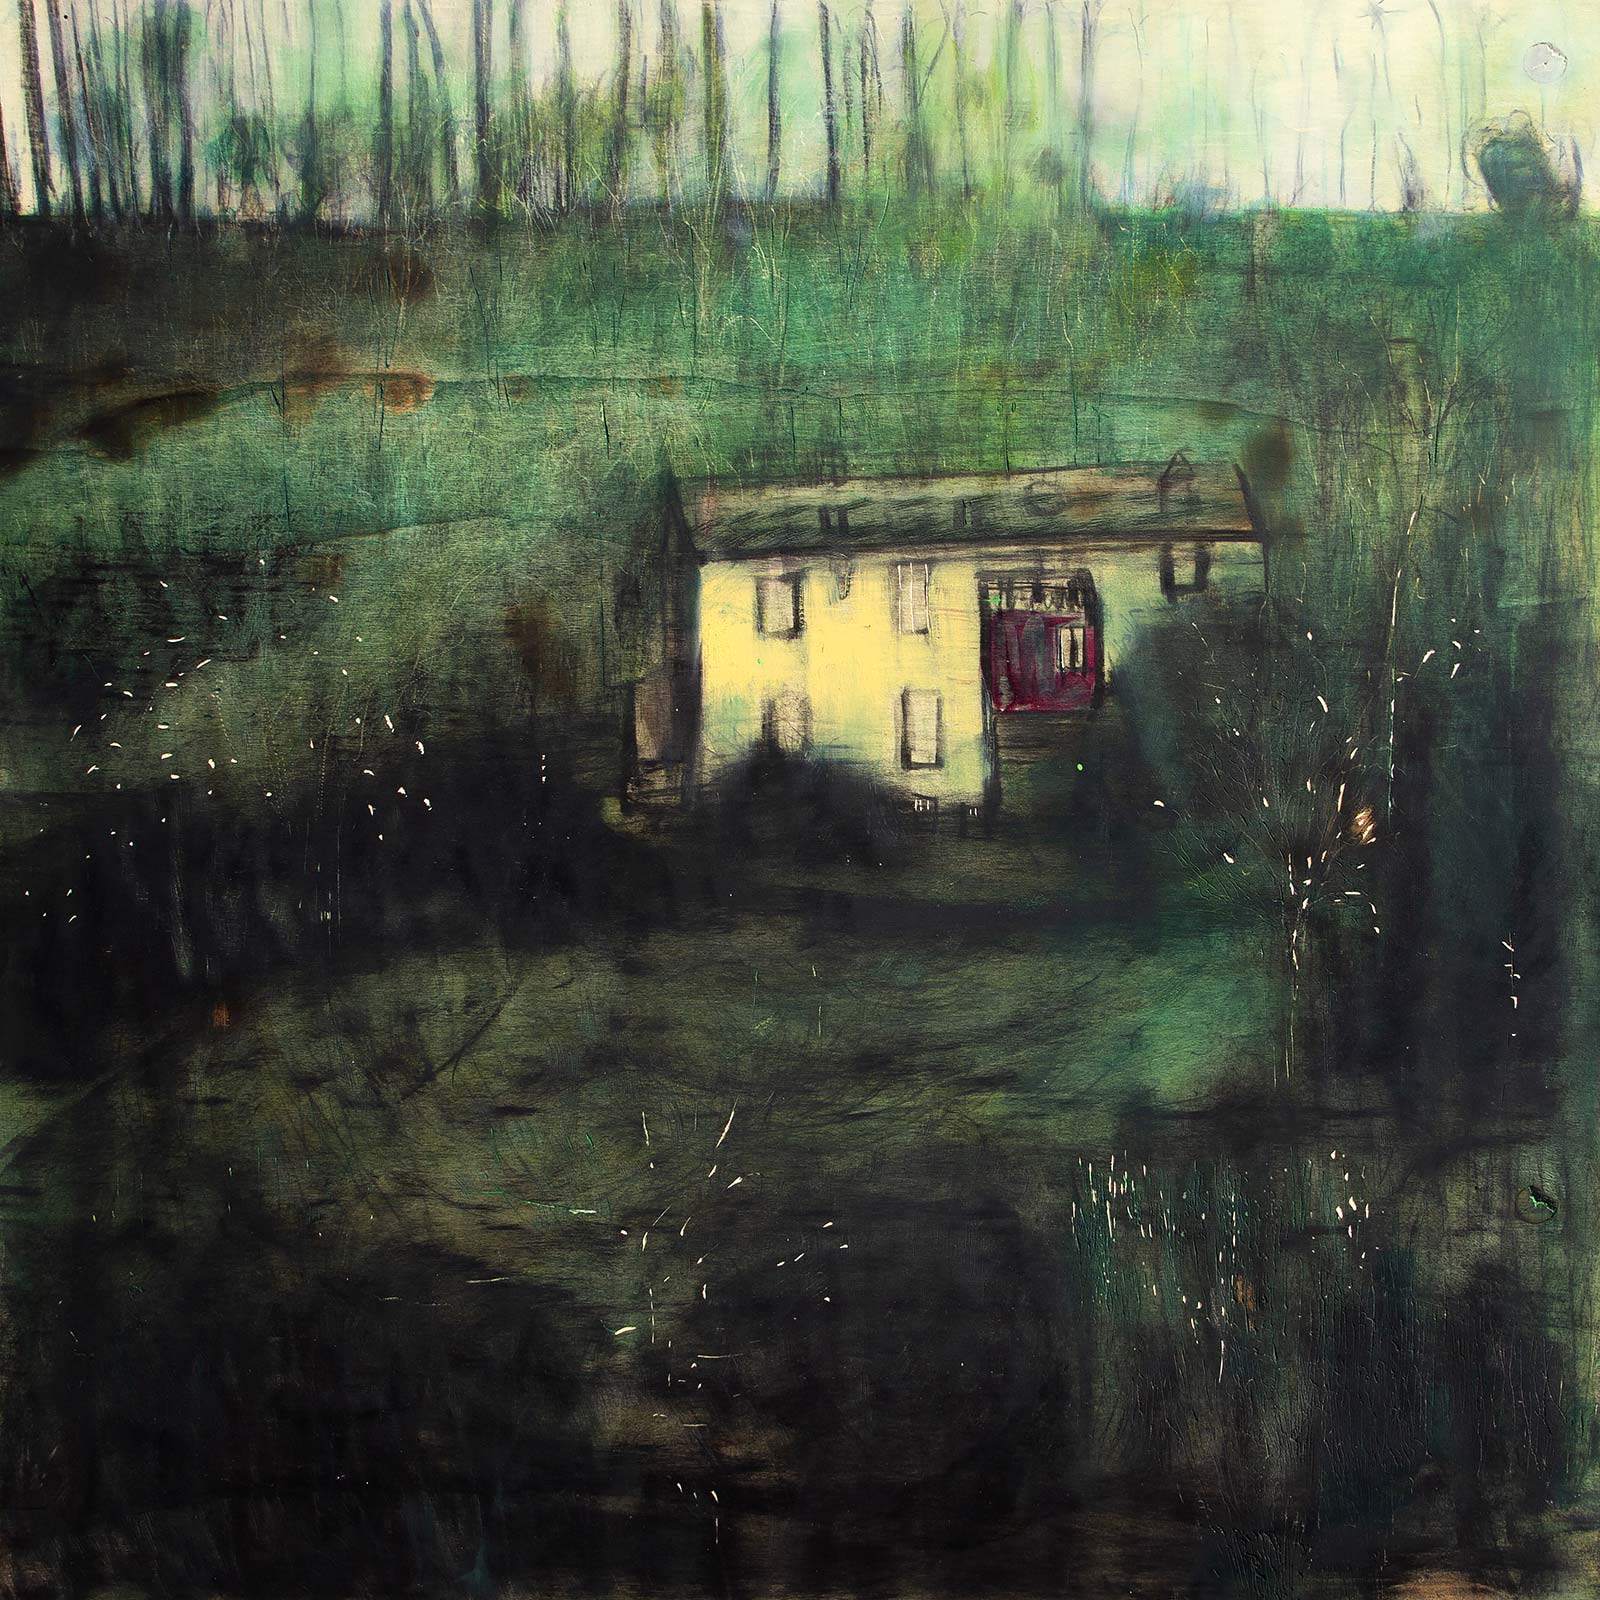 Chiara Lera – The green house, 85 x 85 cm, olio e combustione su tavola, 2013